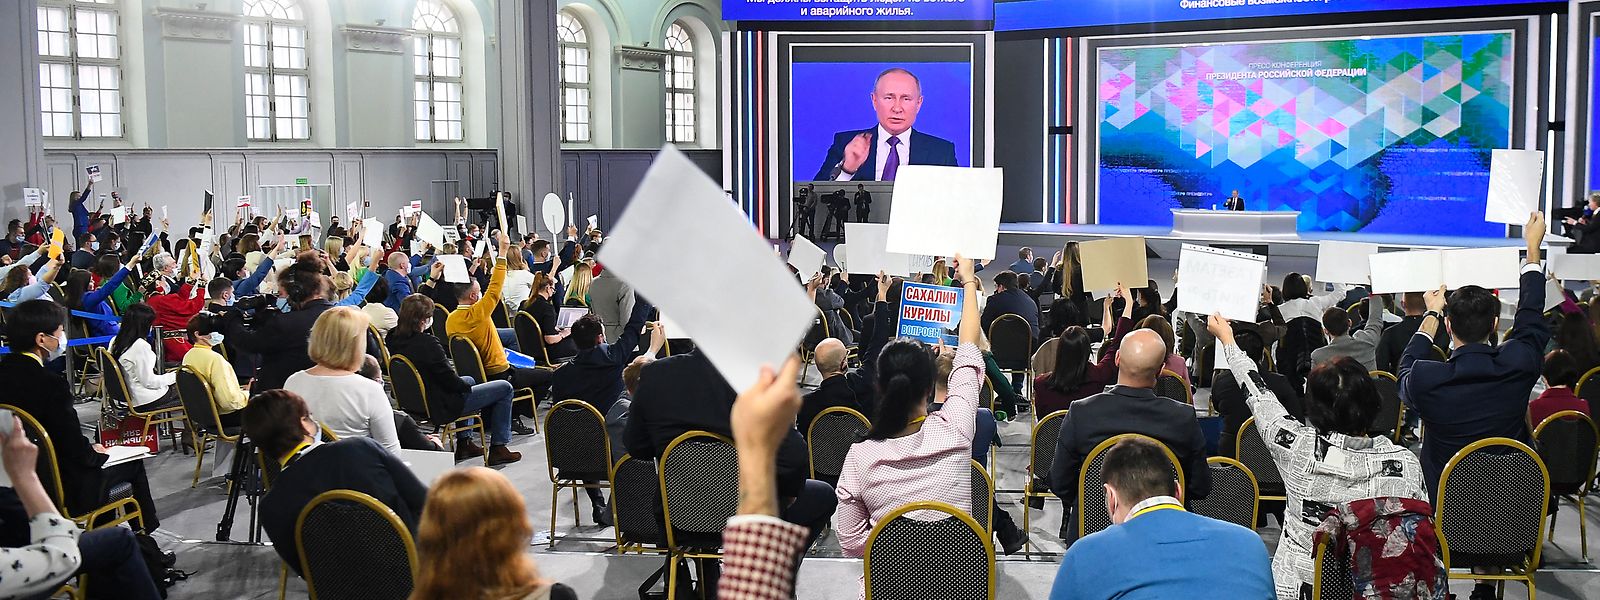 Der russische Präsident Wladimir Putin hält zwar noch, wie hier am 23. Dezember 2021, seine jährliche große Pressekonferenz ab. Doch die Medien in seinem Land sind allesamt unterdrückt und auf Linie gebracht.